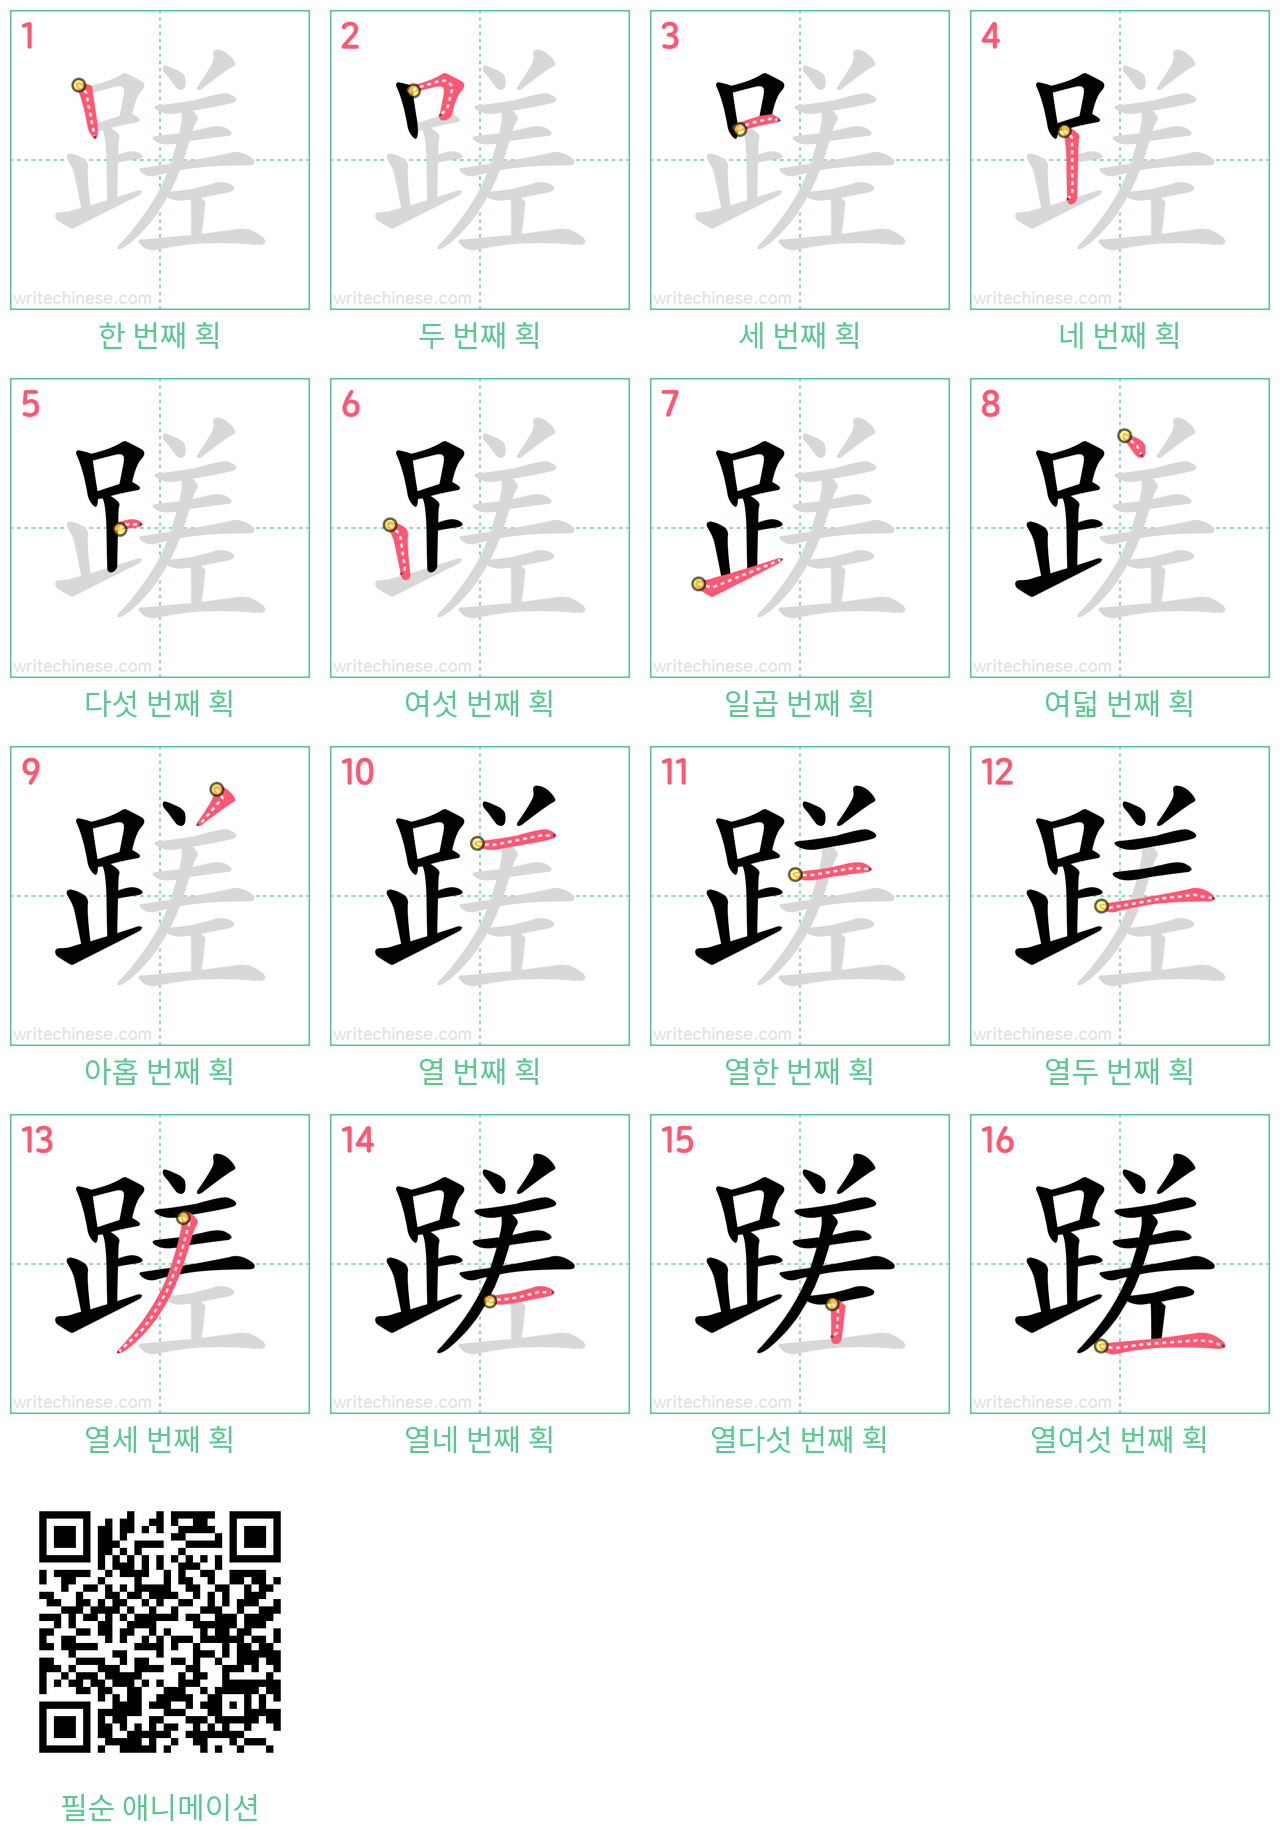 蹉 step-by-step stroke order diagrams